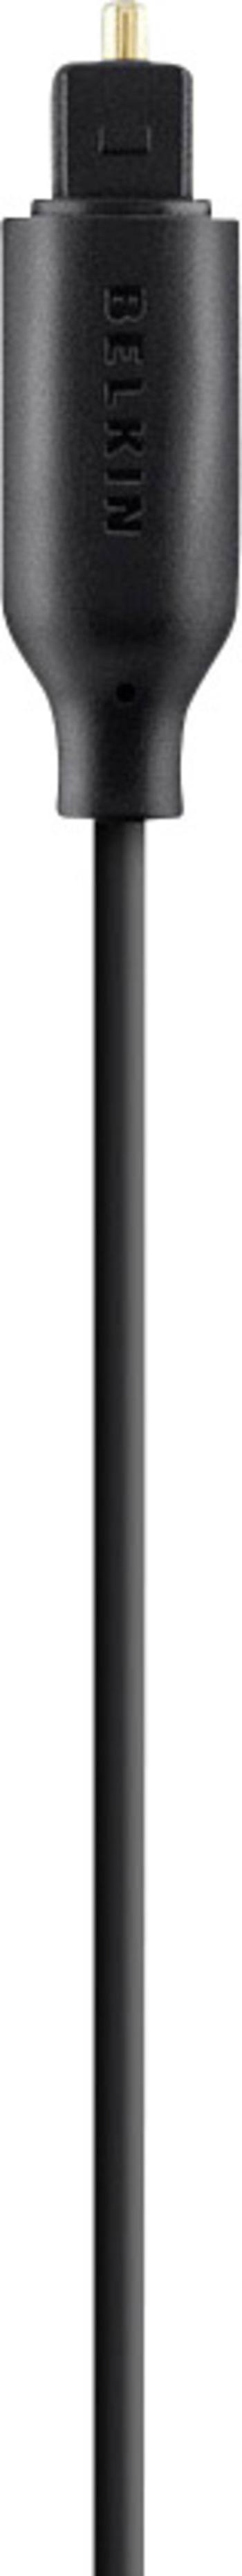 Belkin Toslink digitálny audio prepojovací kábel [1x Toslink zástrčka (ODT) - 1x Toslink zástrčka (ODT)] 1.00 m čierna